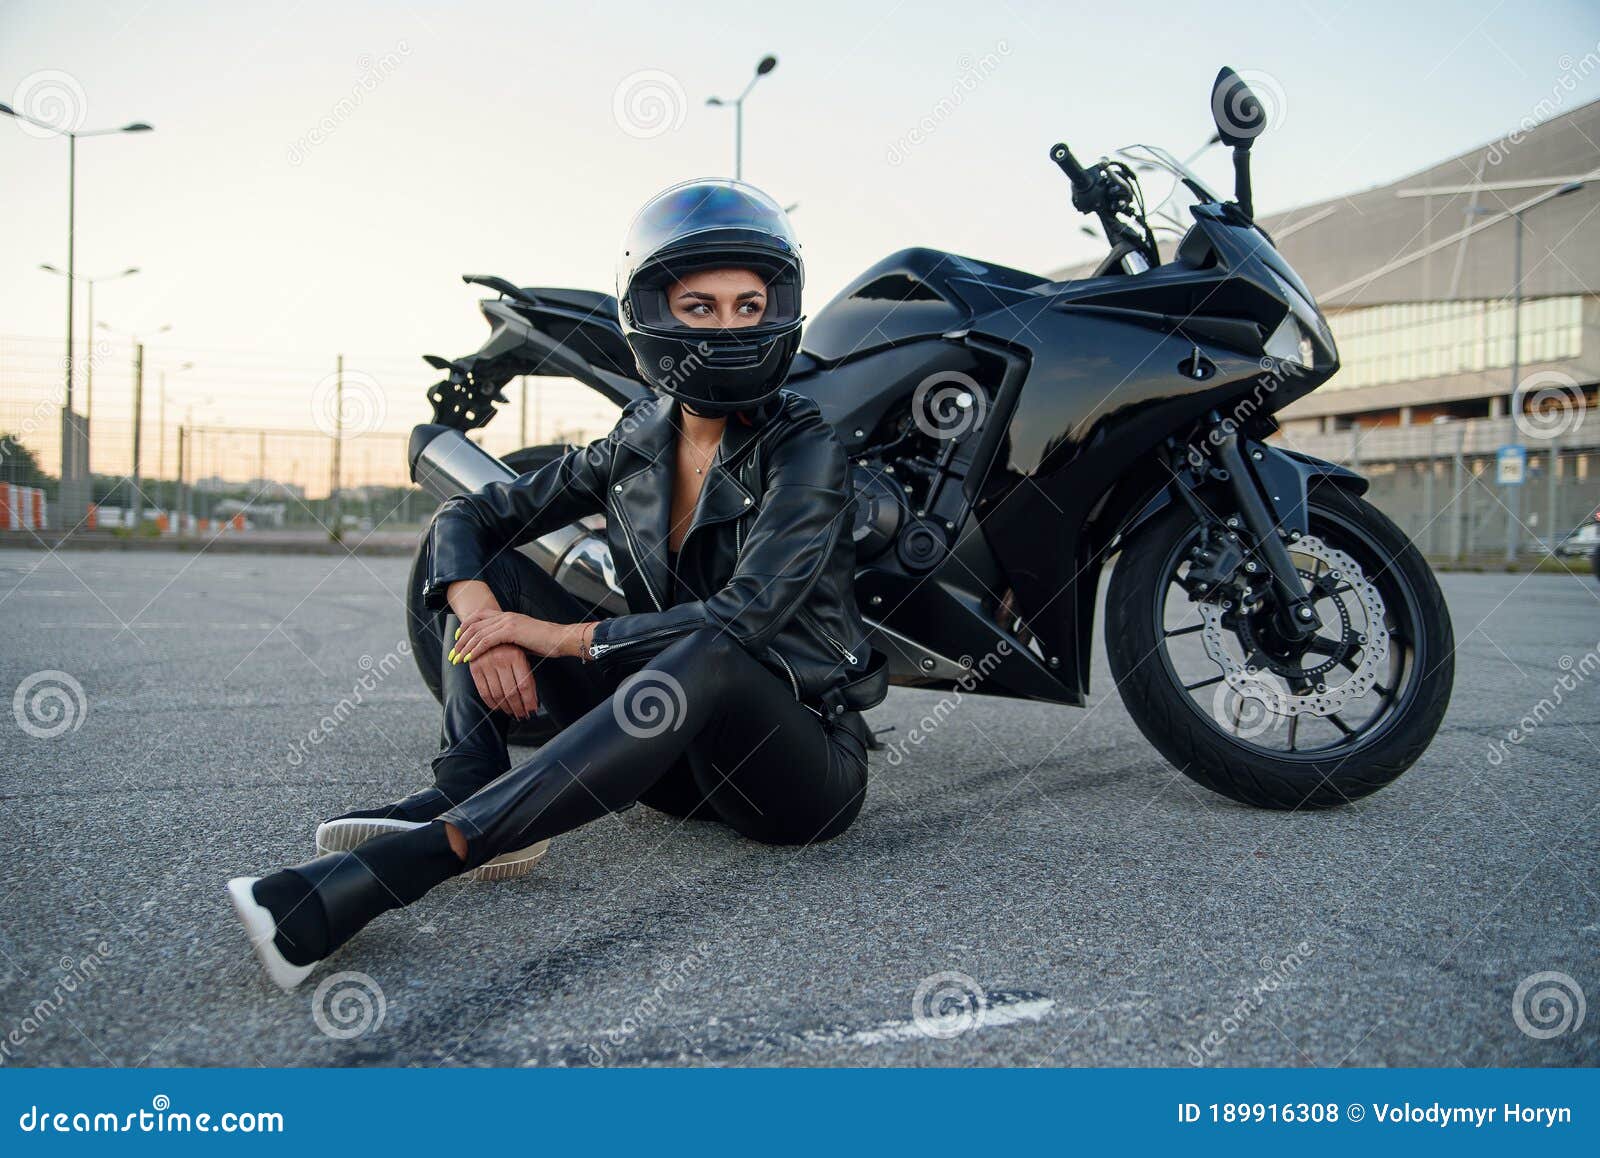 Entre no mundo do esporte como piloto de moto - moto.com.br